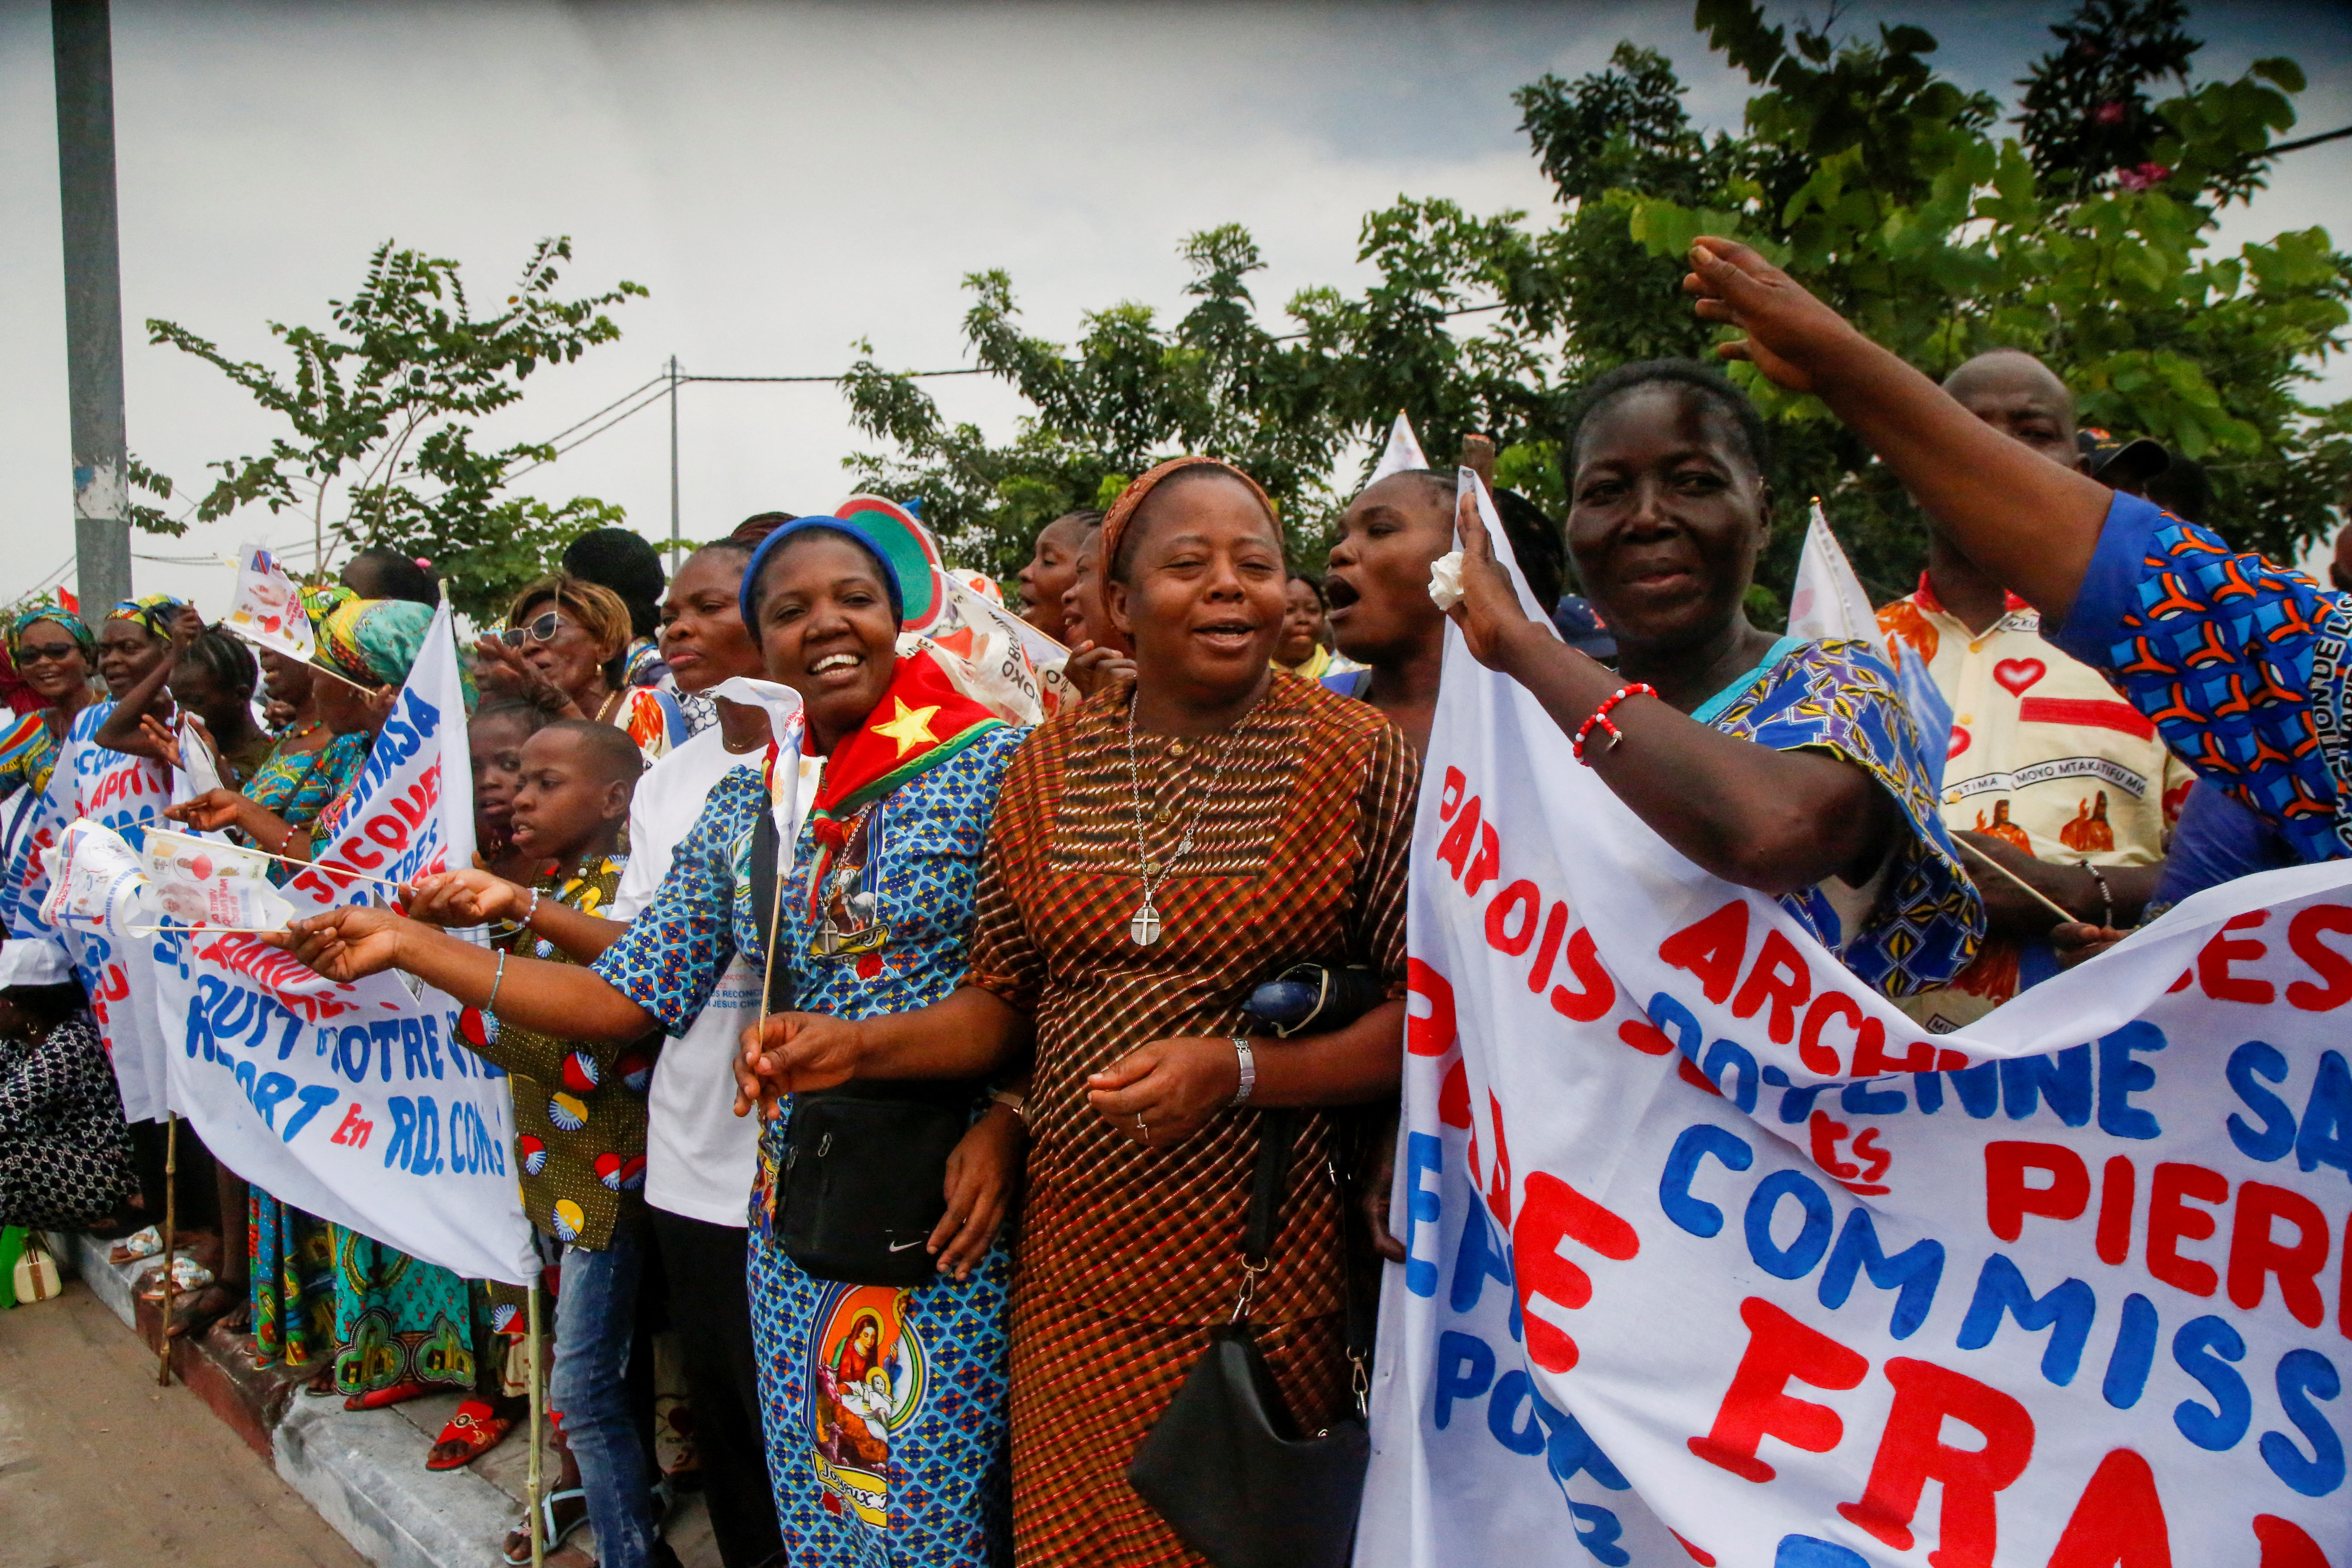 Los residentes de Kinshasa celebran mientras se alinean en las calles para dar la bienvenida al papa Francisco en Kinshasa, República Democrática del Congo 31 de enero 2023.REUTERS/Luc Gnago